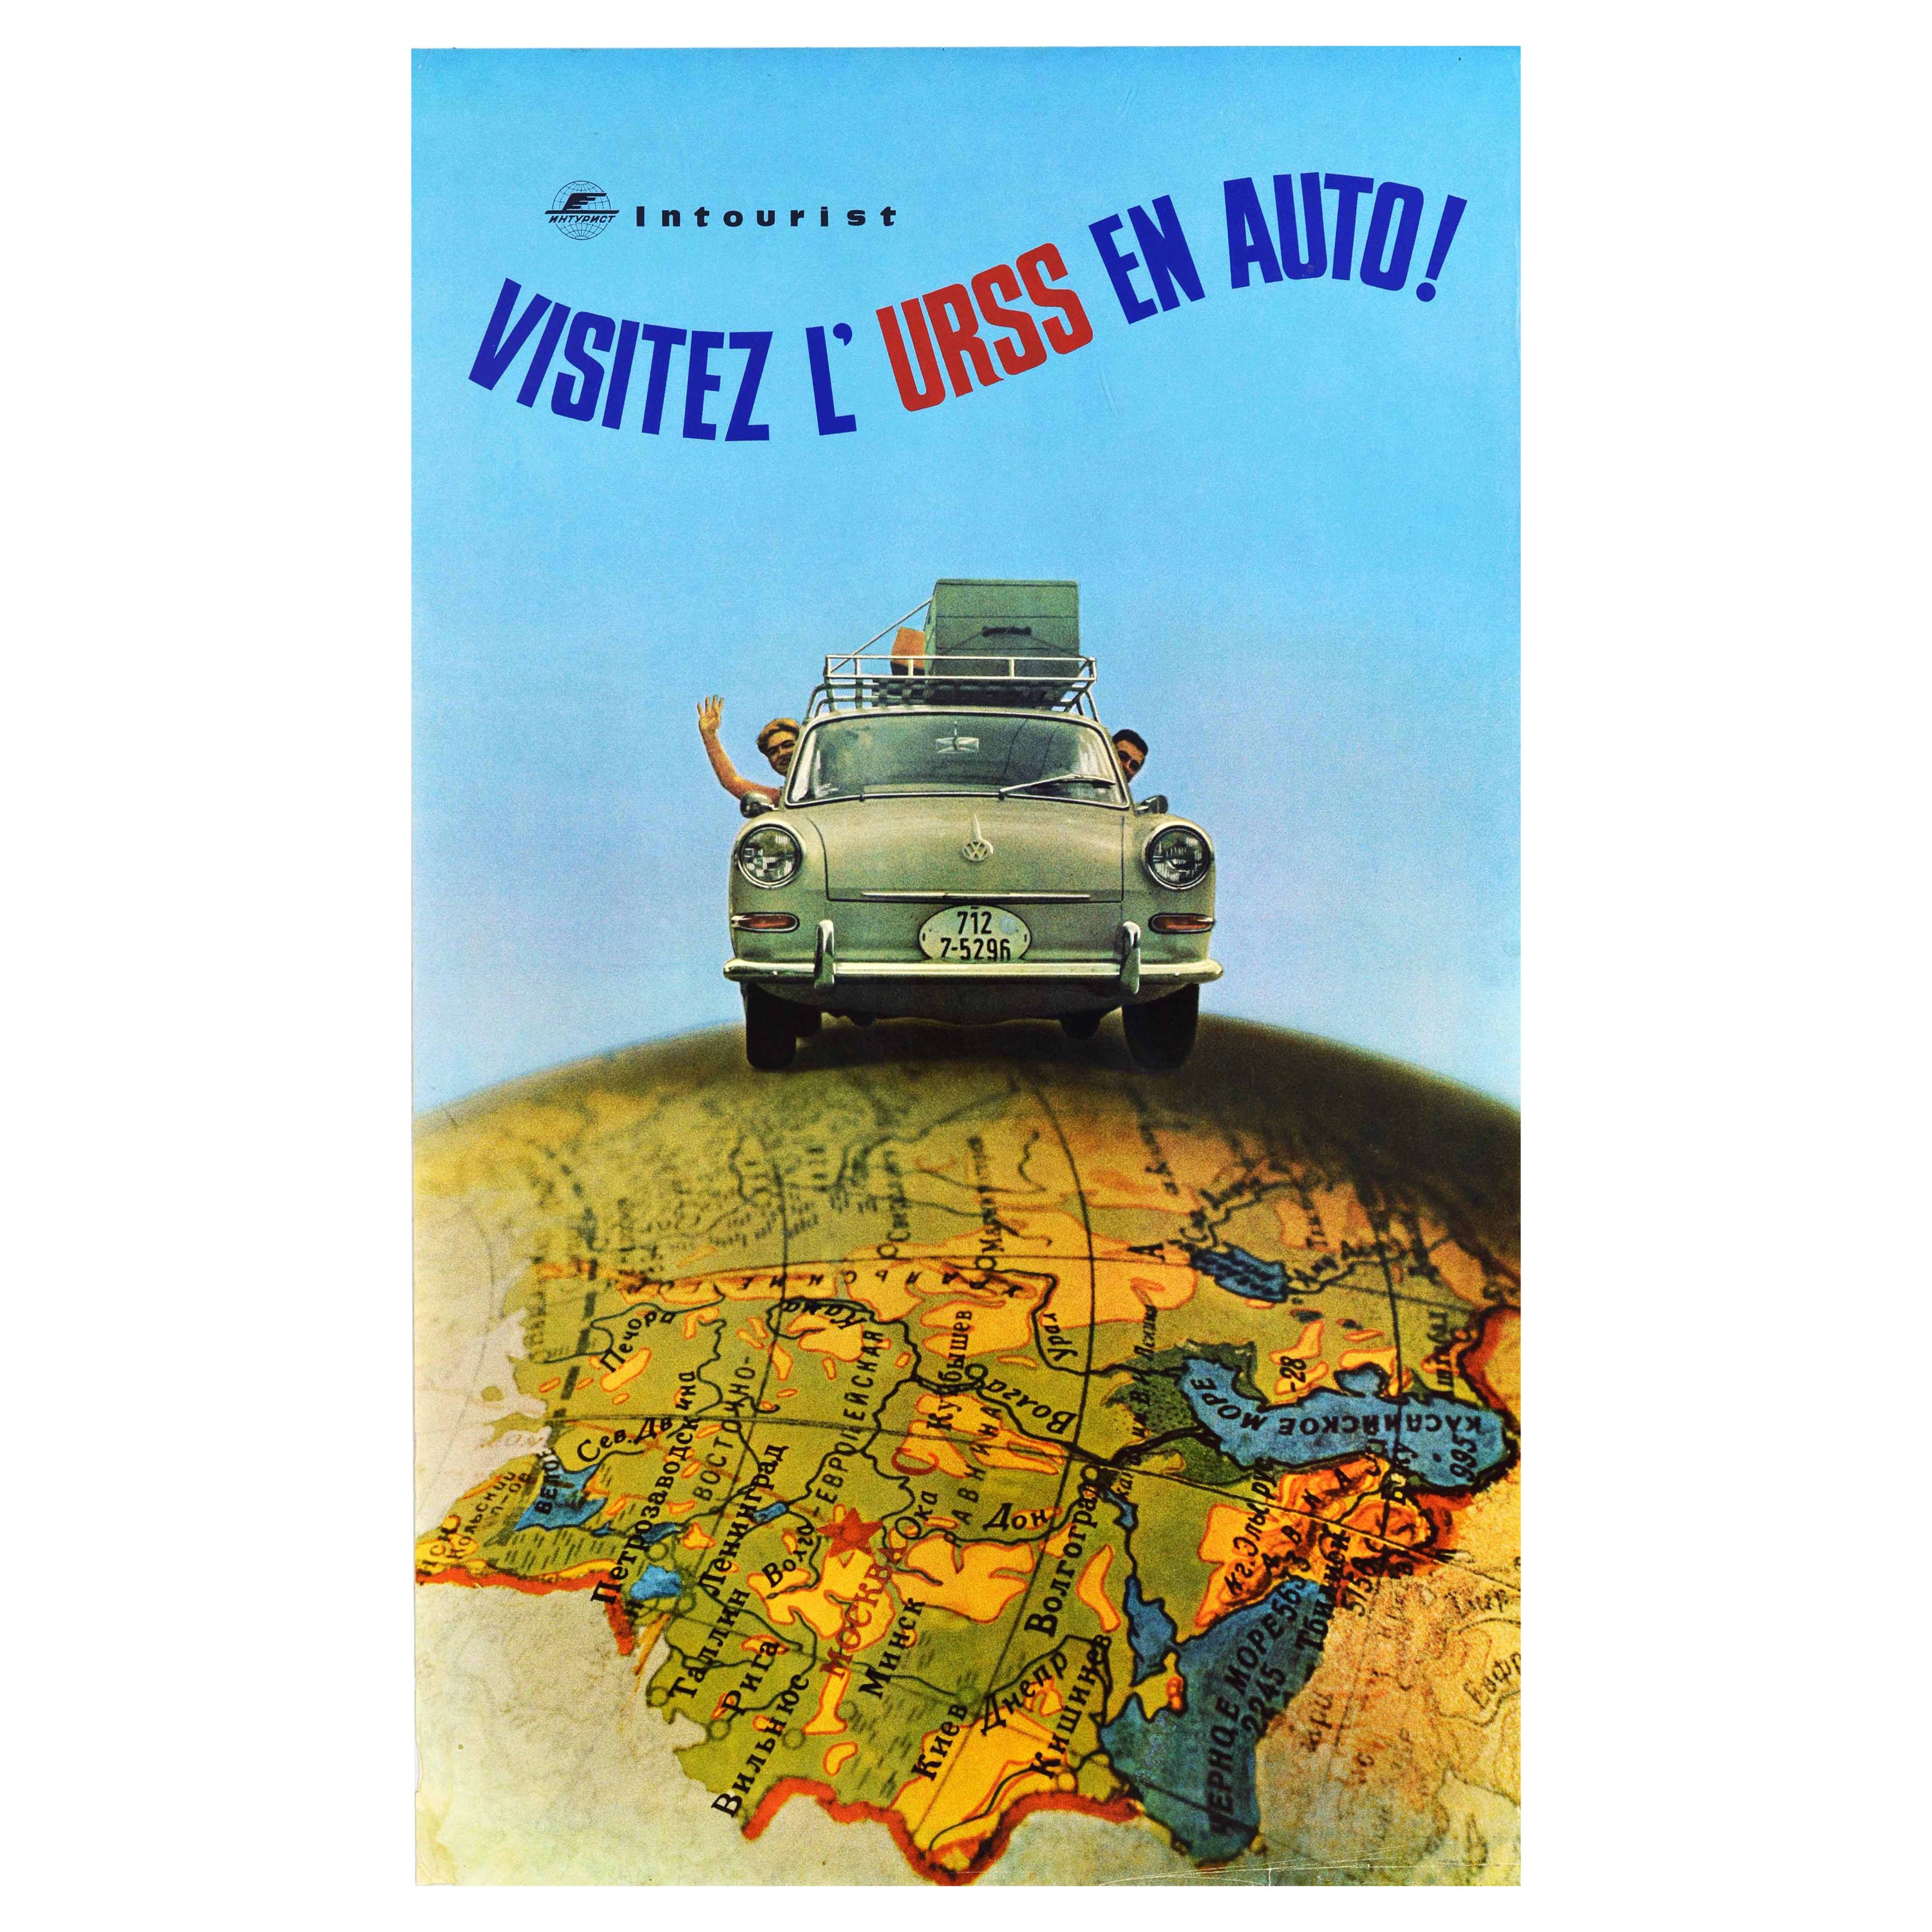 Original Vintage Soviet Travel Poster Visitez L'URSS En Auto VW Intourist USSR For Sale